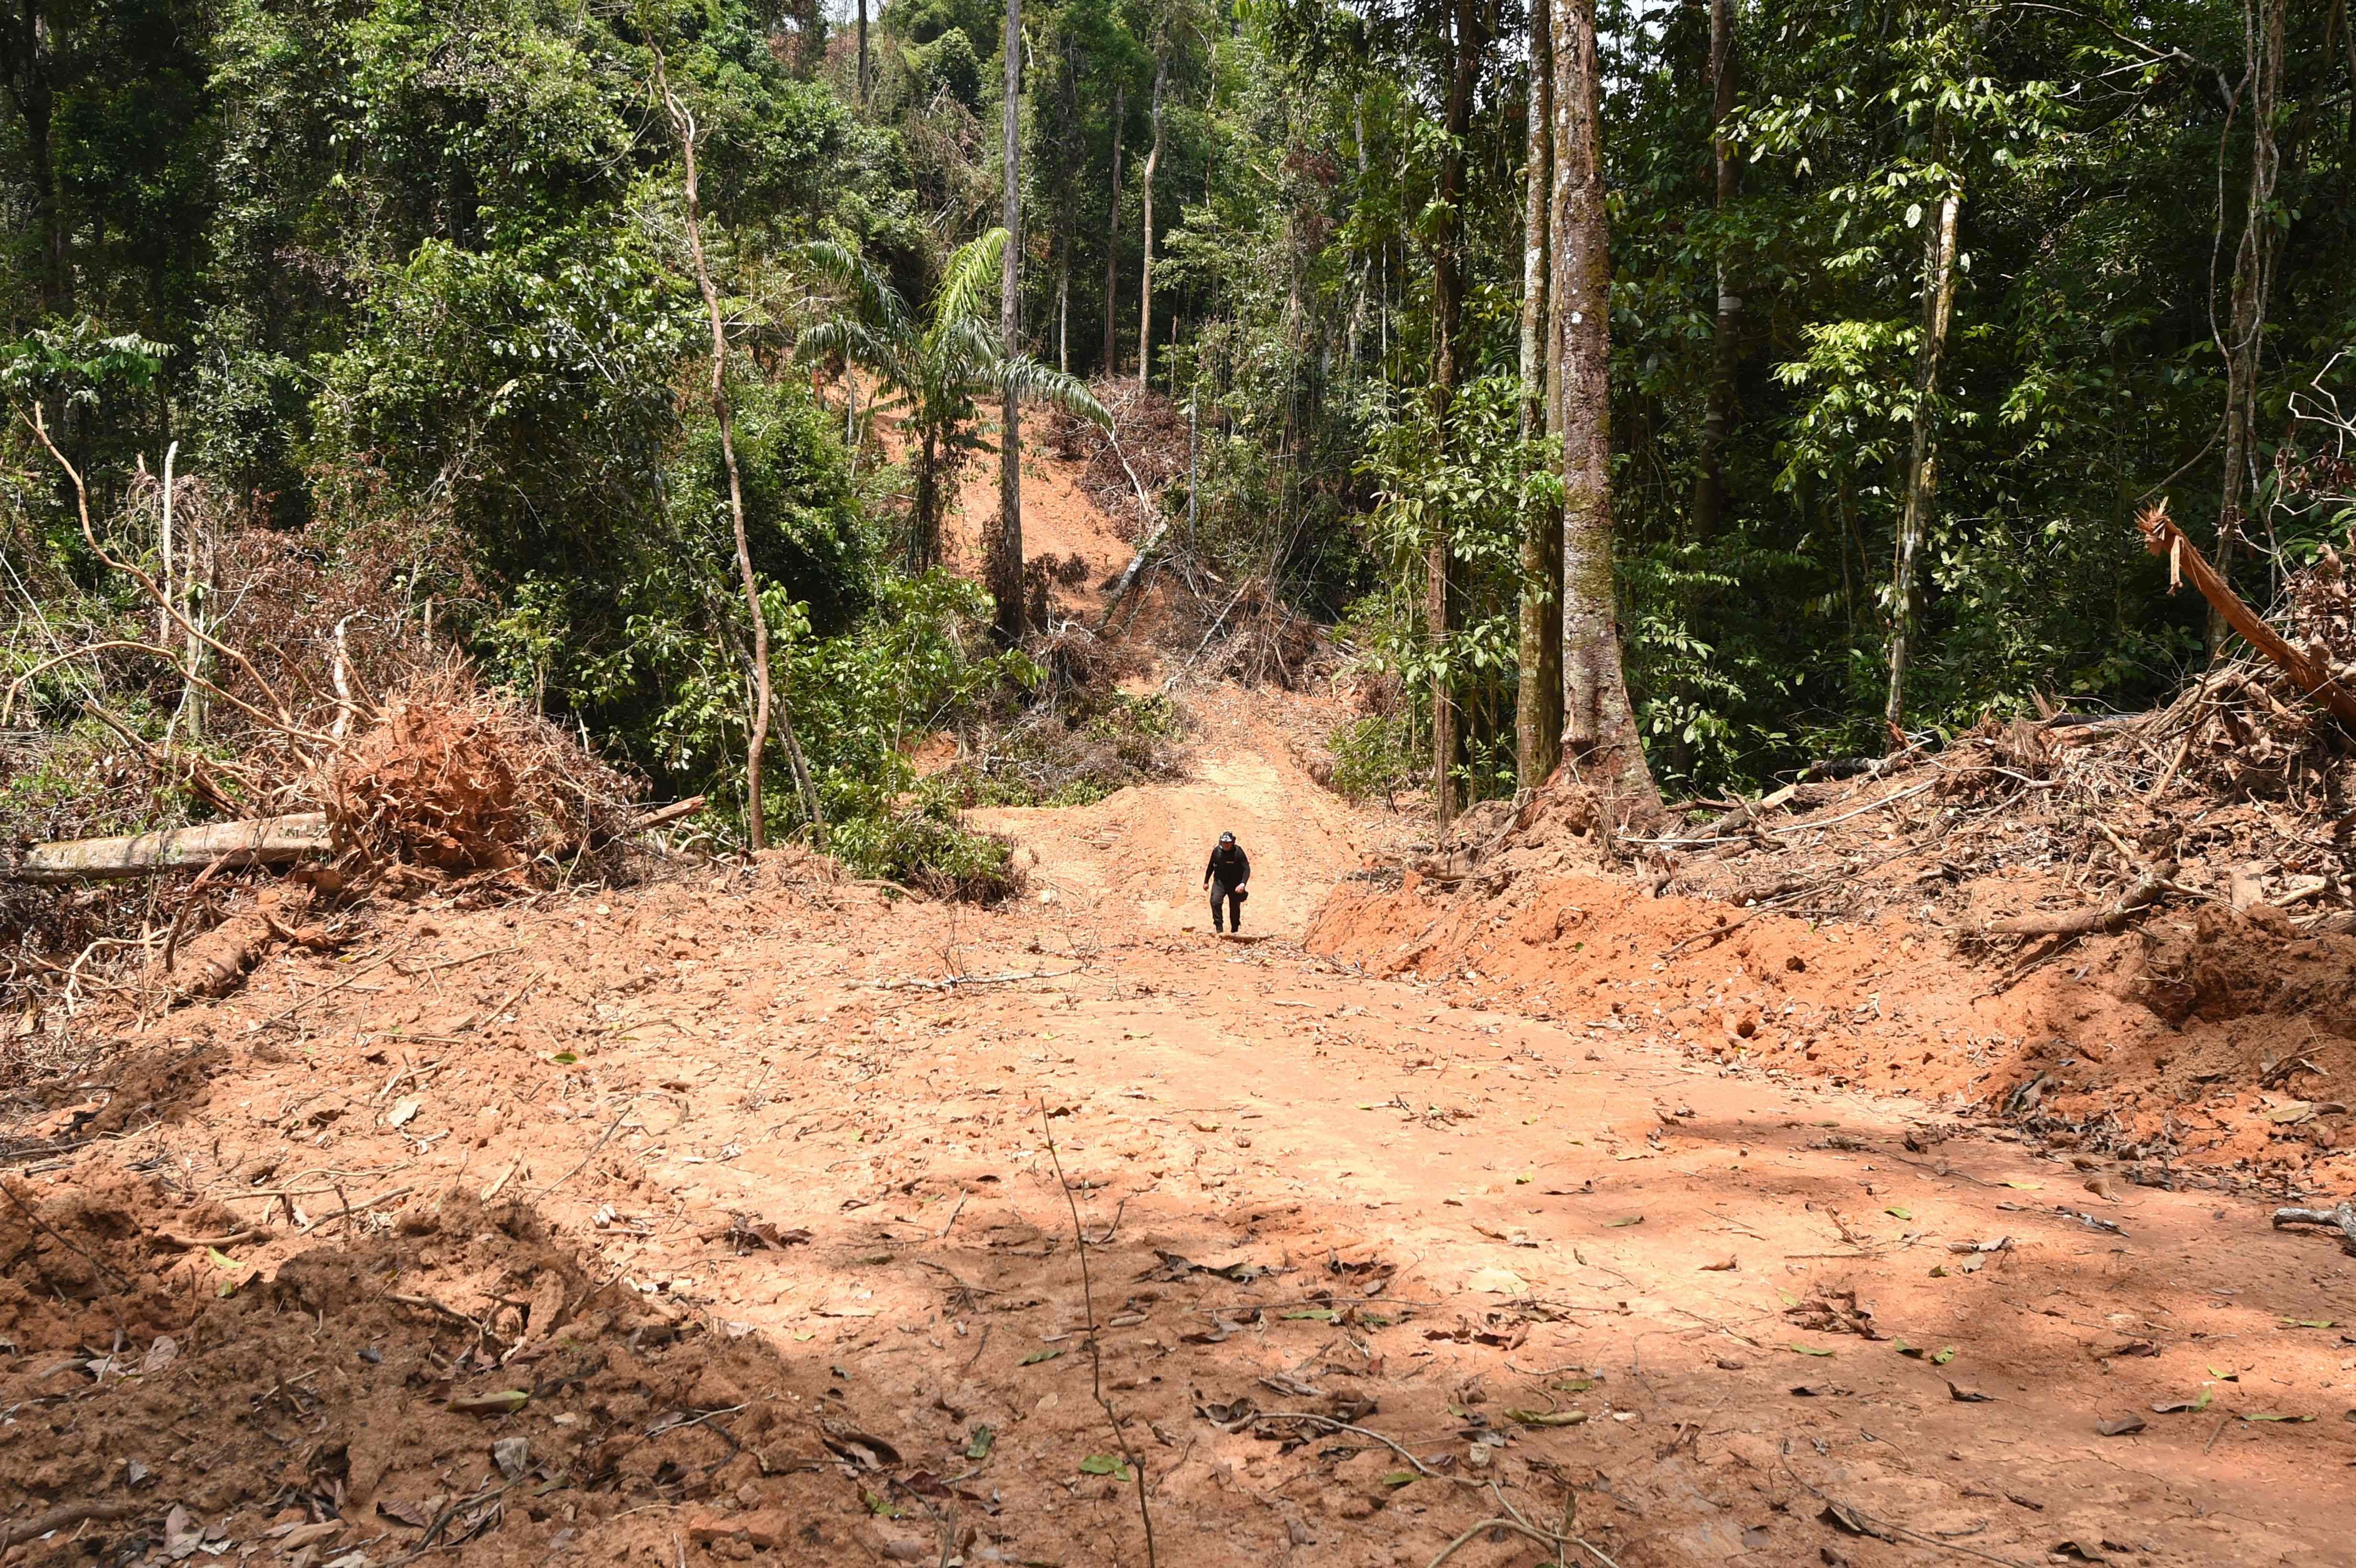 Proteger y conservar las selvas tropicales es crucial, pero para hacerlo necesitamos inversión en Estado de derecho y en nuevos modelos económicos.